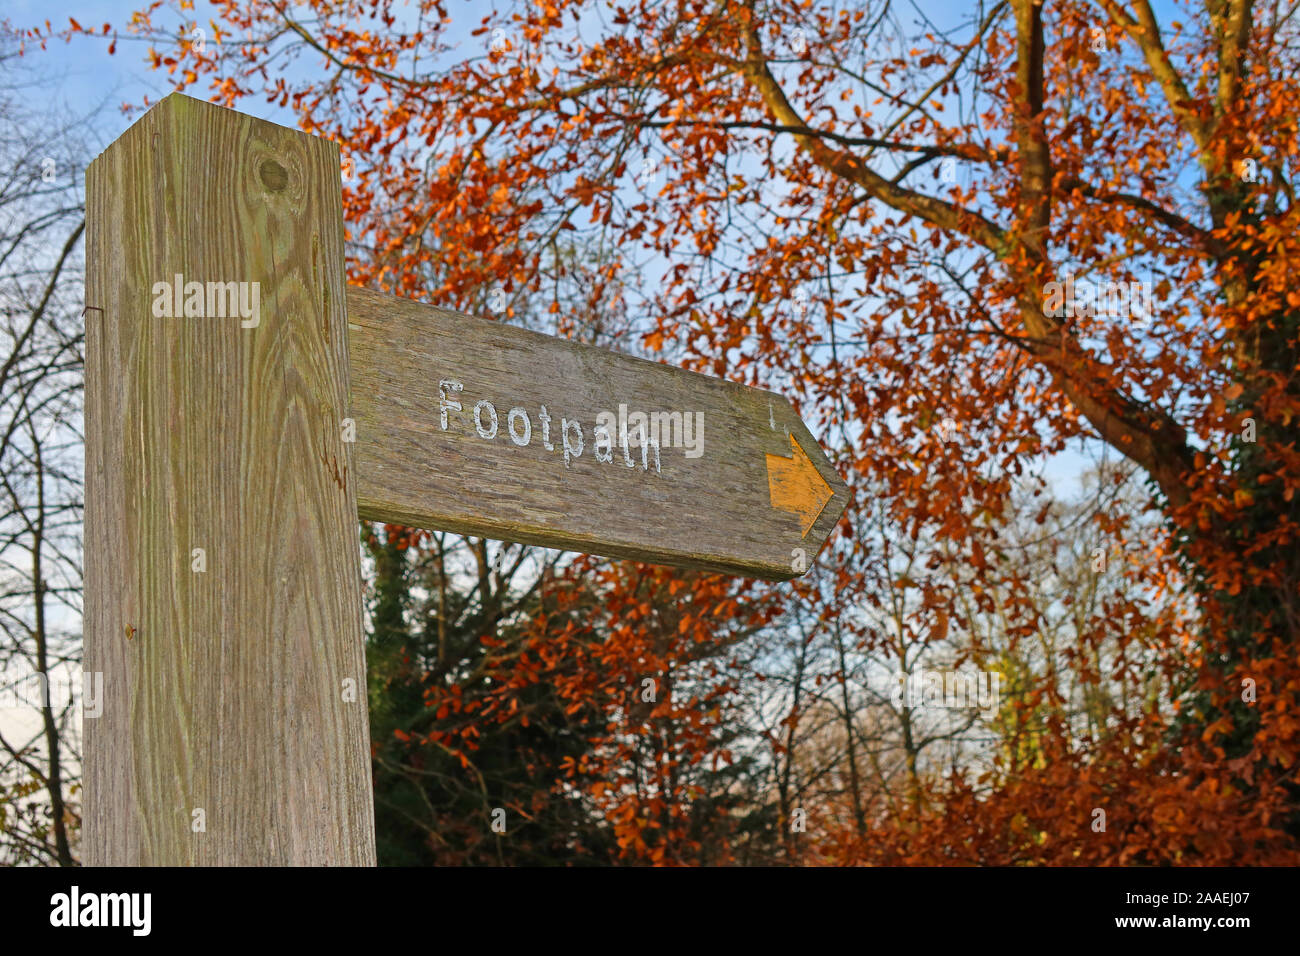 Sentier fingerpost signer avec la flèche, l'automne dans les bois - choisir une promenade rafraîchissante, Grappenhall, Cheshire, WA4 3EP Banque D'Images